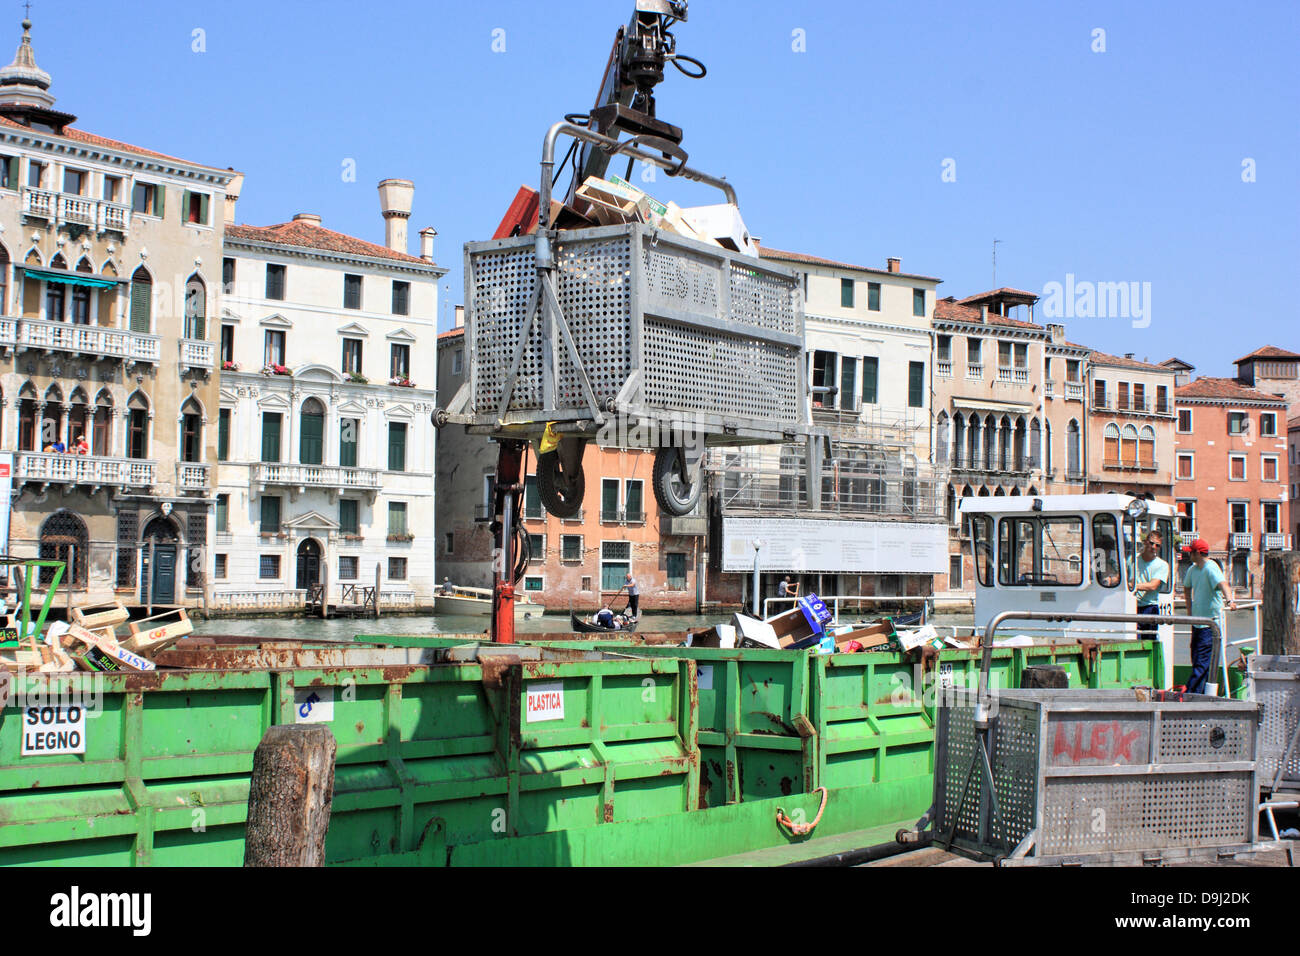 Servicios de residuos en Venecia, recogida de basura por barco después del mercado de fruta de Rialto. Foto de stock